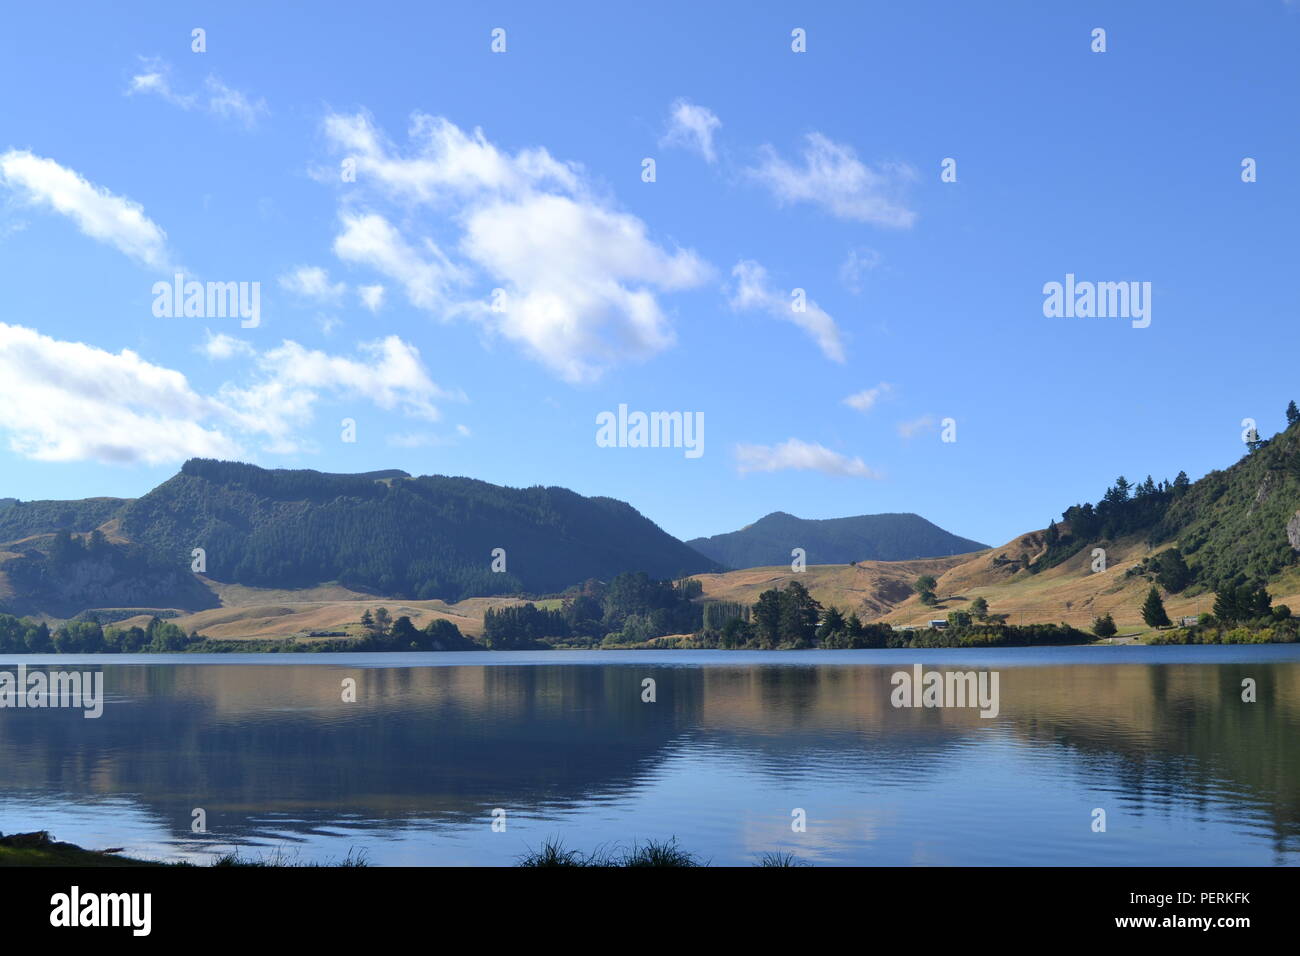 New zealand lake reflection near water Stock Photo